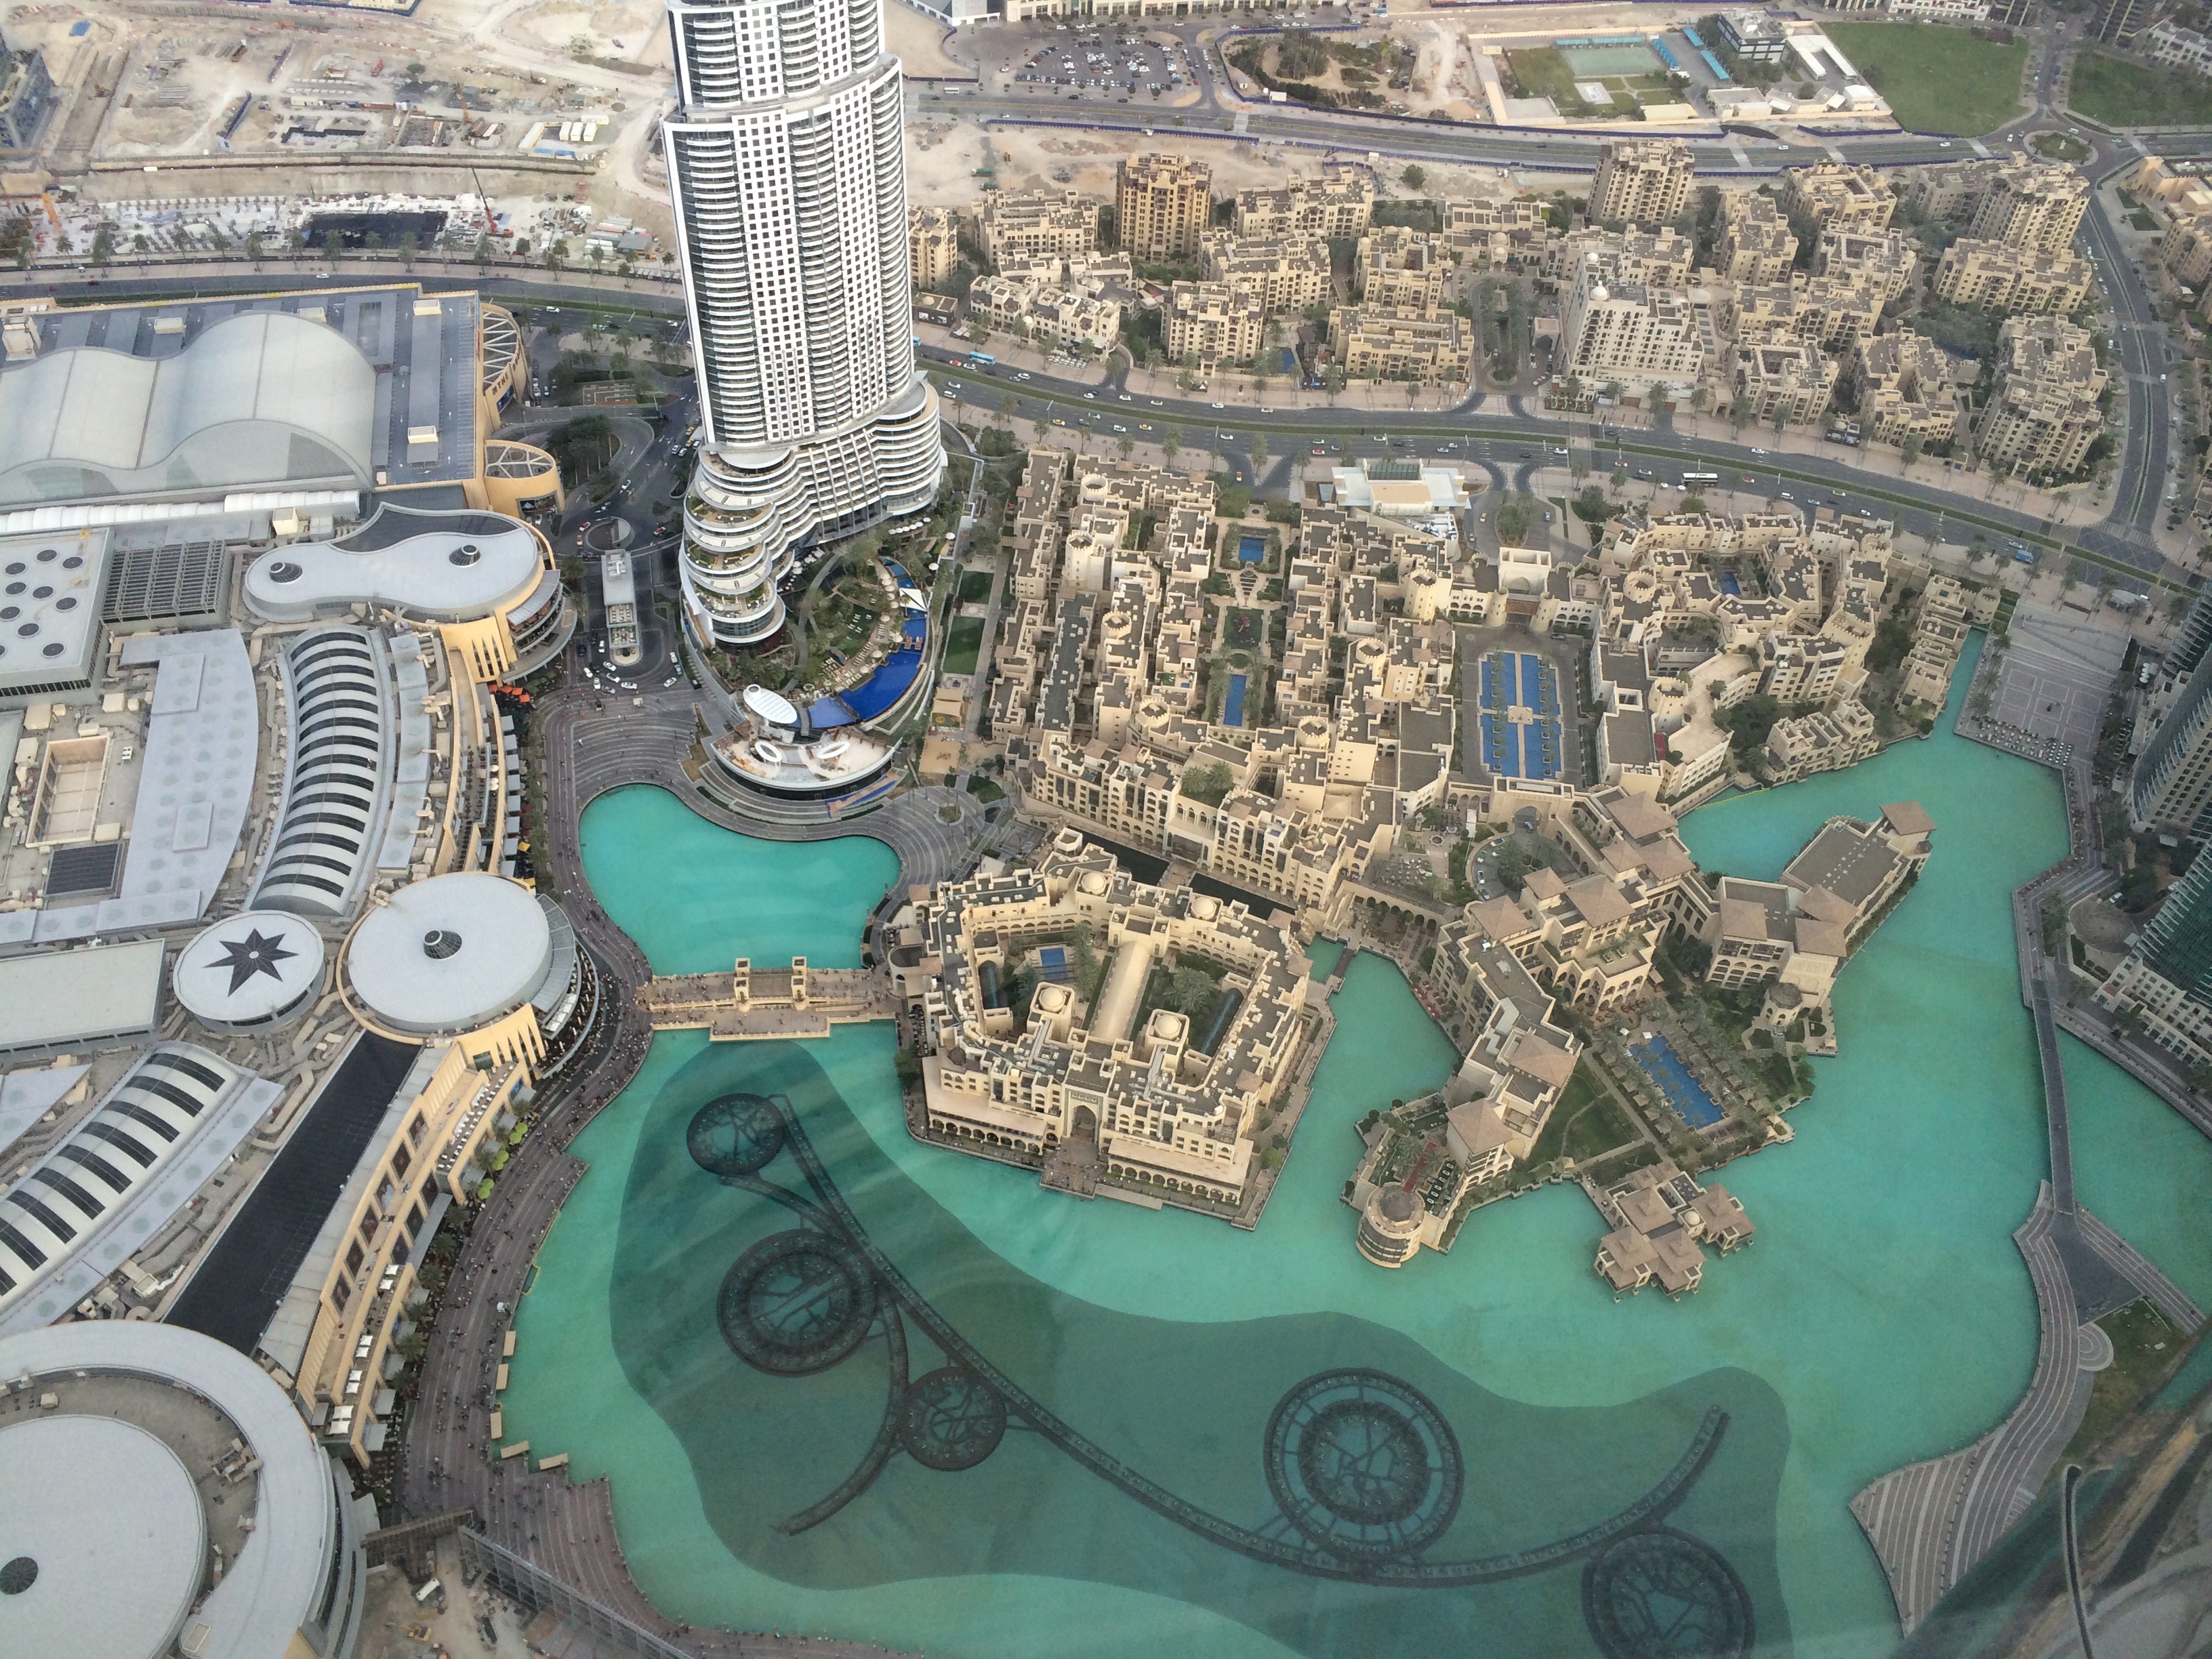 Peninsula Дубай. Музей будущего в Дубае. Погода в дубае сегодня вода